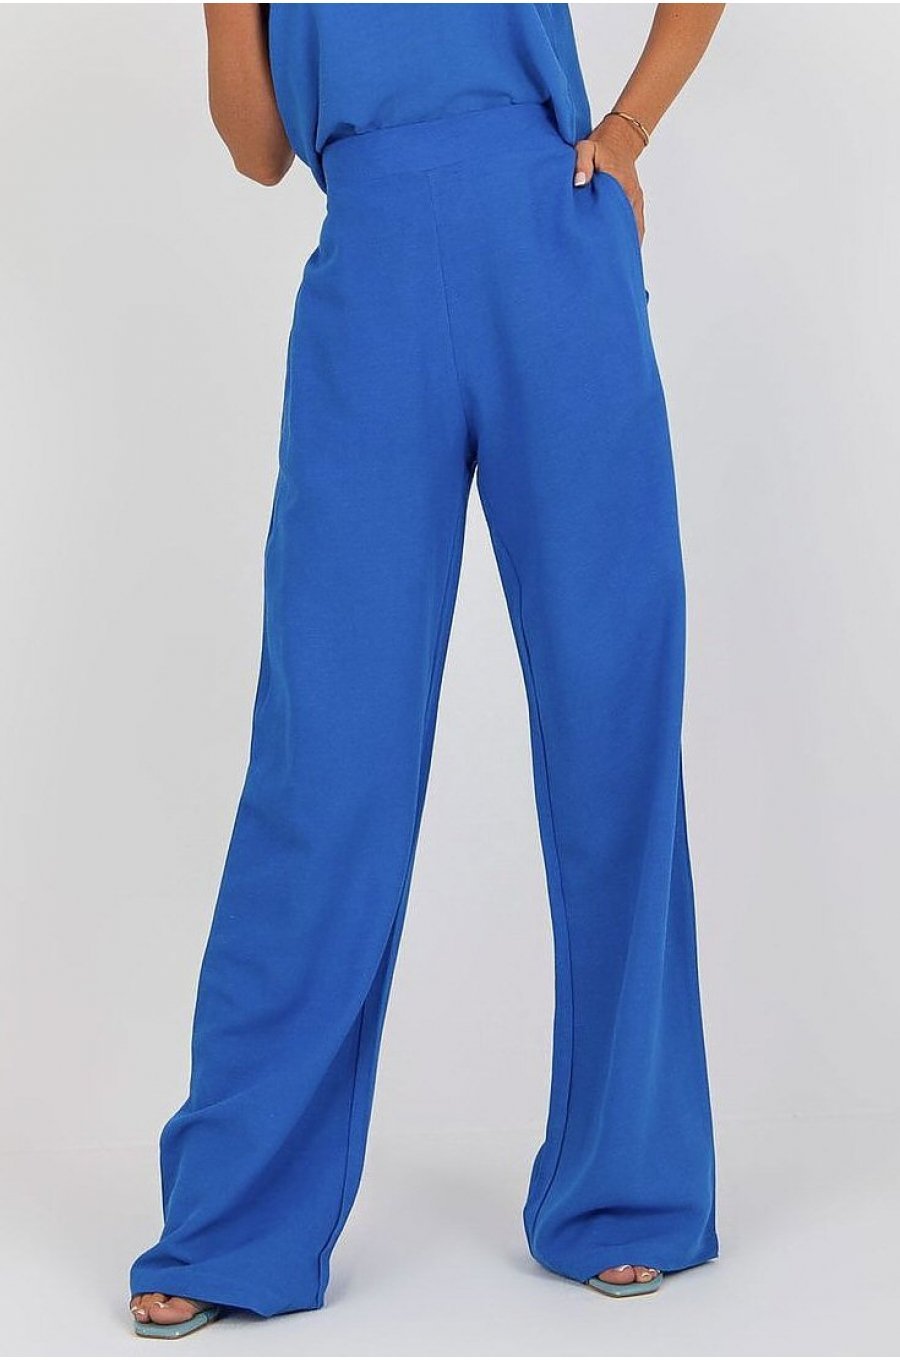 Pantaloni dama eleganti evazati, albastri, din bumbac si vascoza, cu talia inalta, Jezel 1 - jojofashion.ro